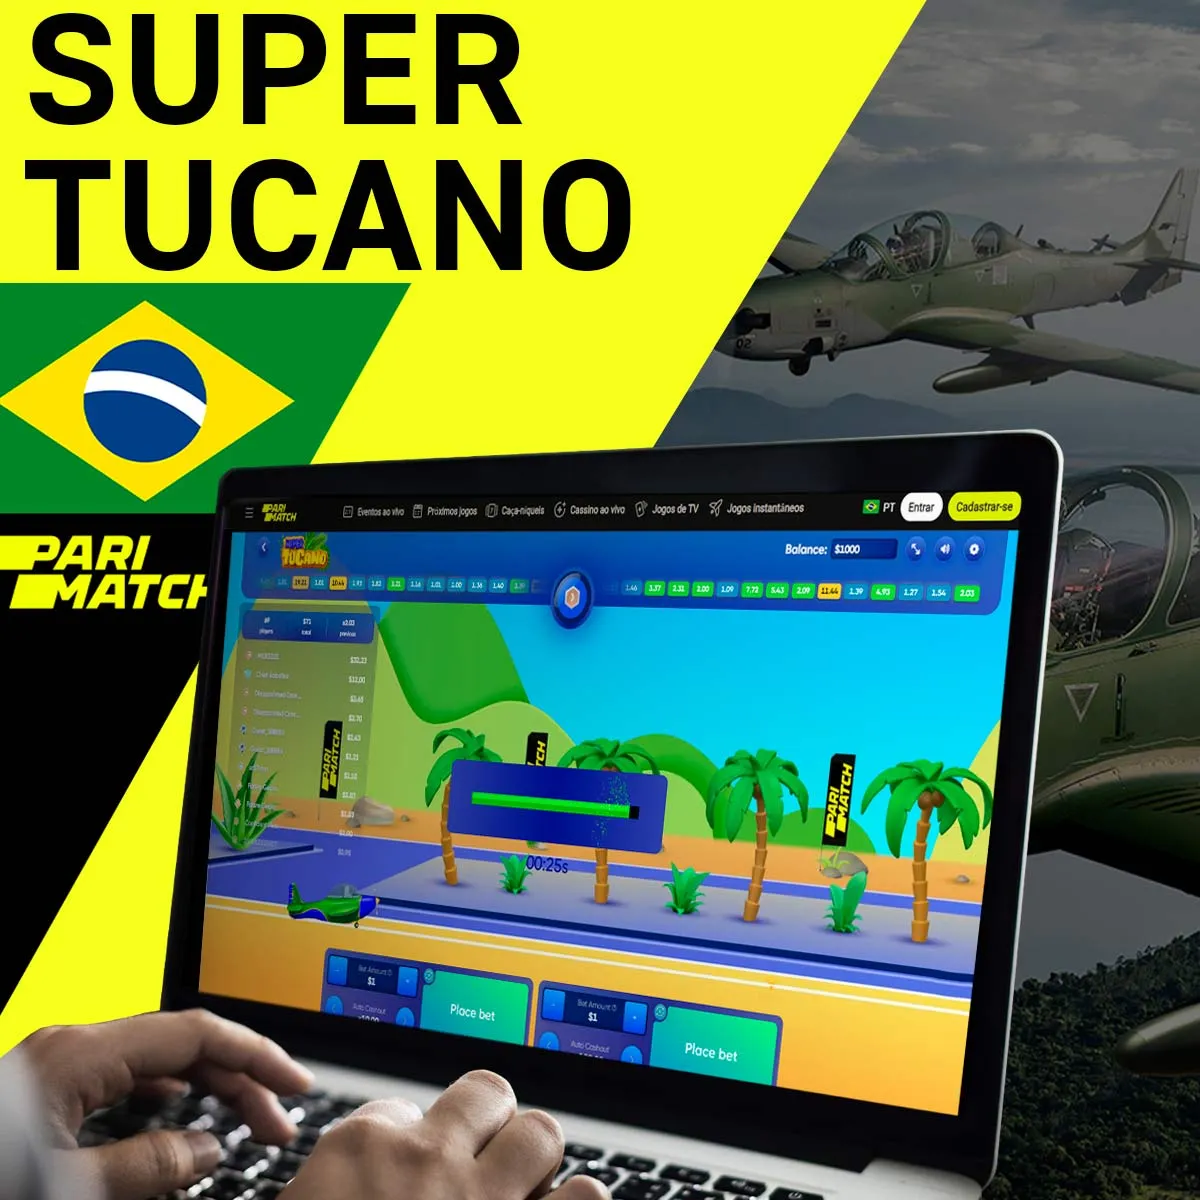 Popular jogo de cassino Supor Tucano na casa de apostas Parimatch no Brasil